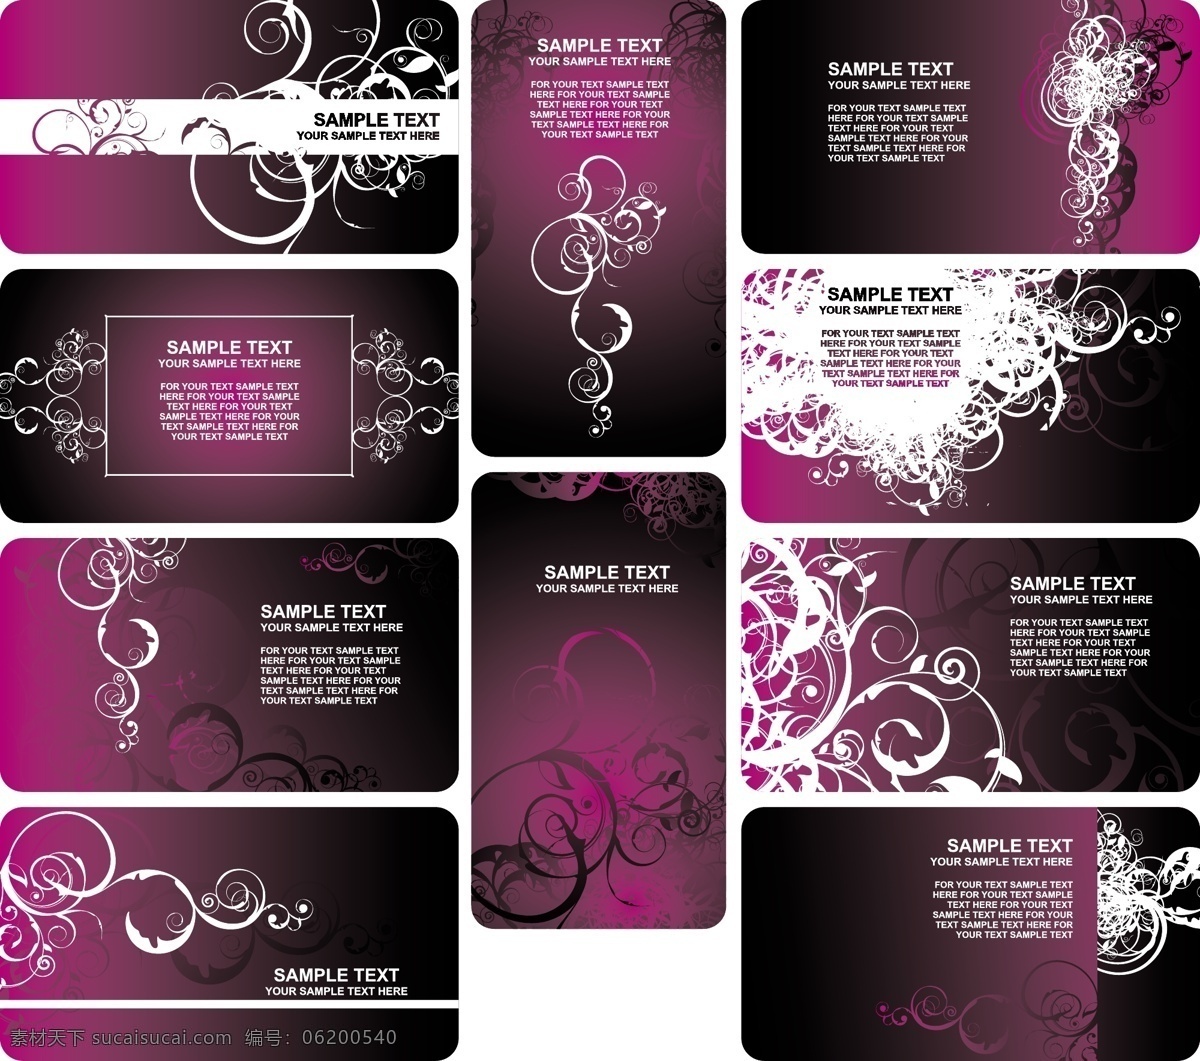 紫罗兰 花纹 卡片 eps格式 会员卡 潮流 矢量图 反白花纹 贵宾卡